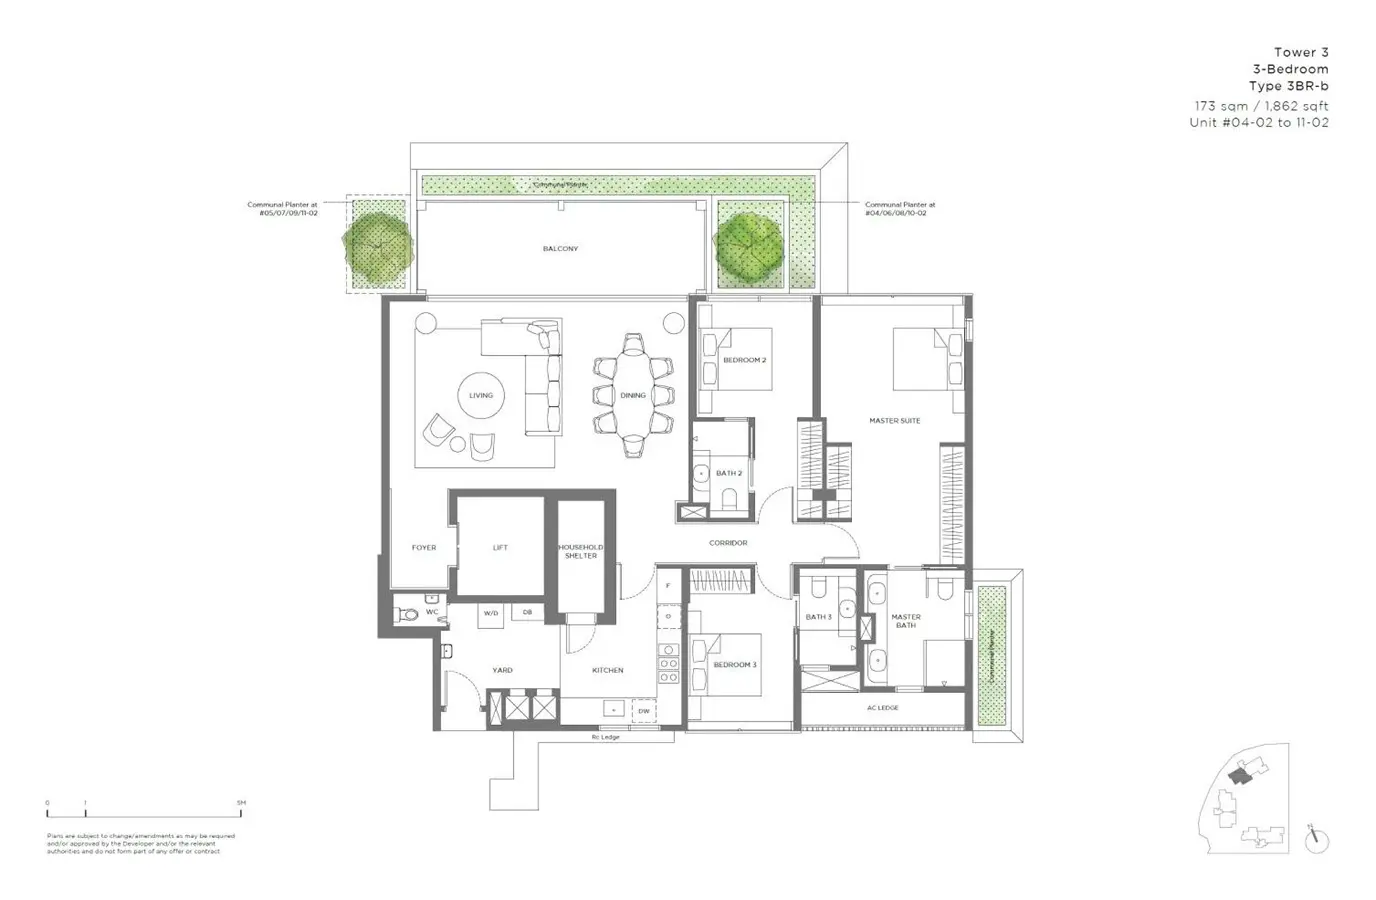 15 Holland Hill - Floor Plan - 3 Bedroom 3BR-b